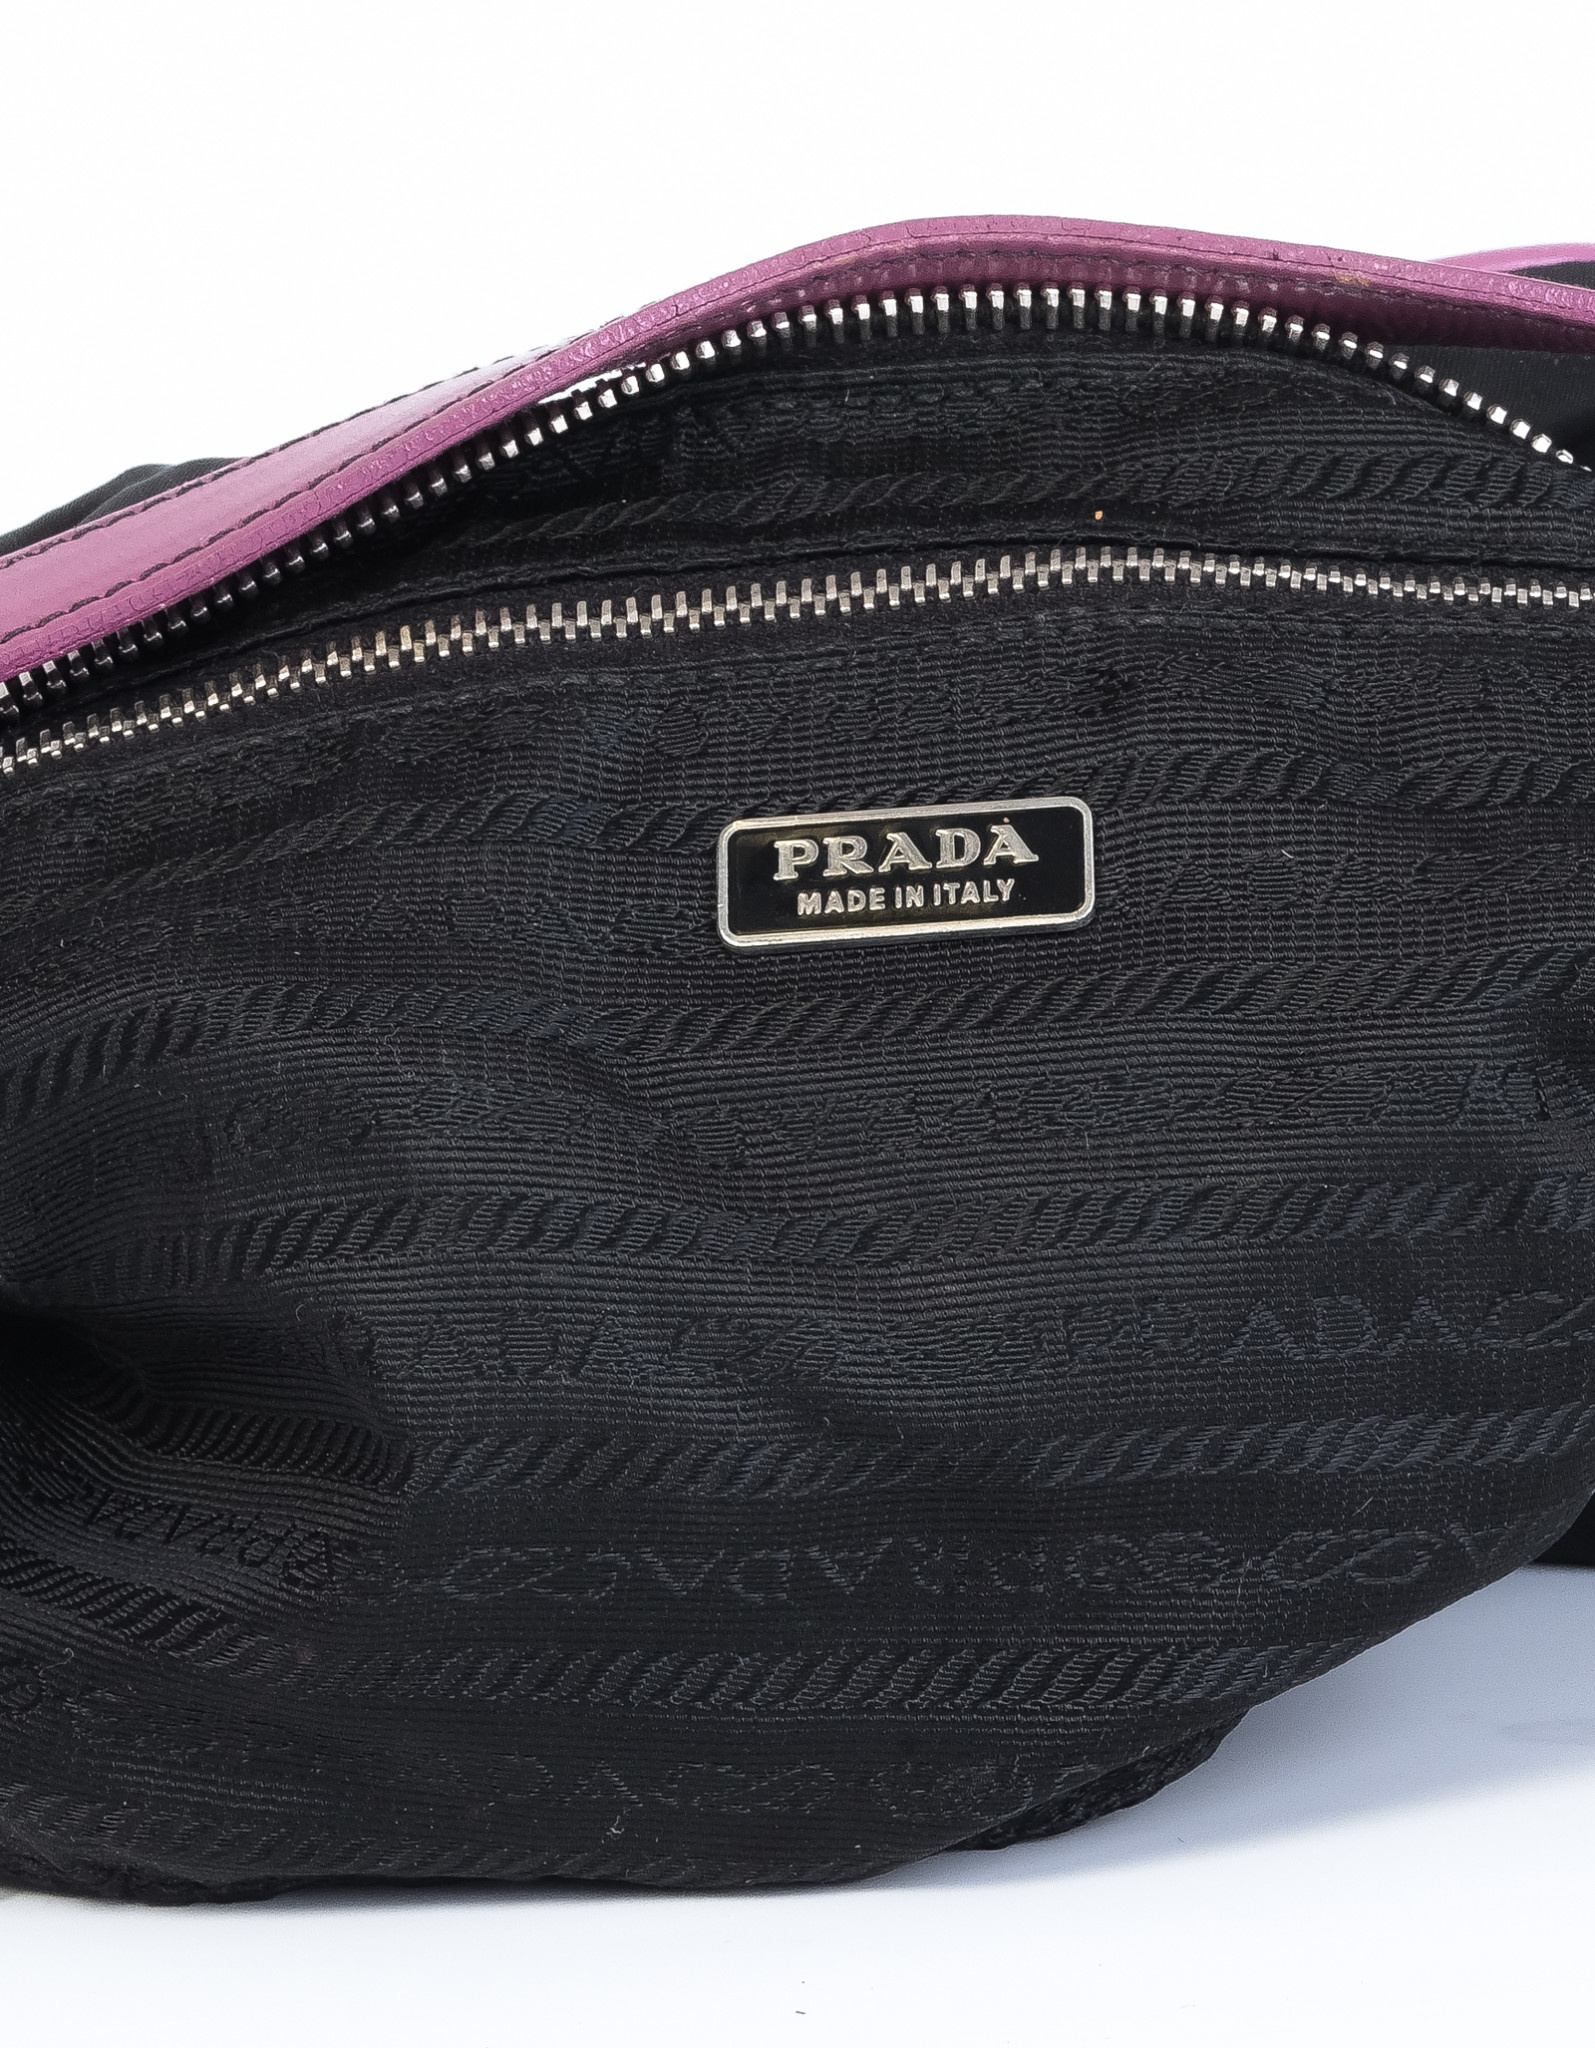 Prada Promenade – The Brand Collector